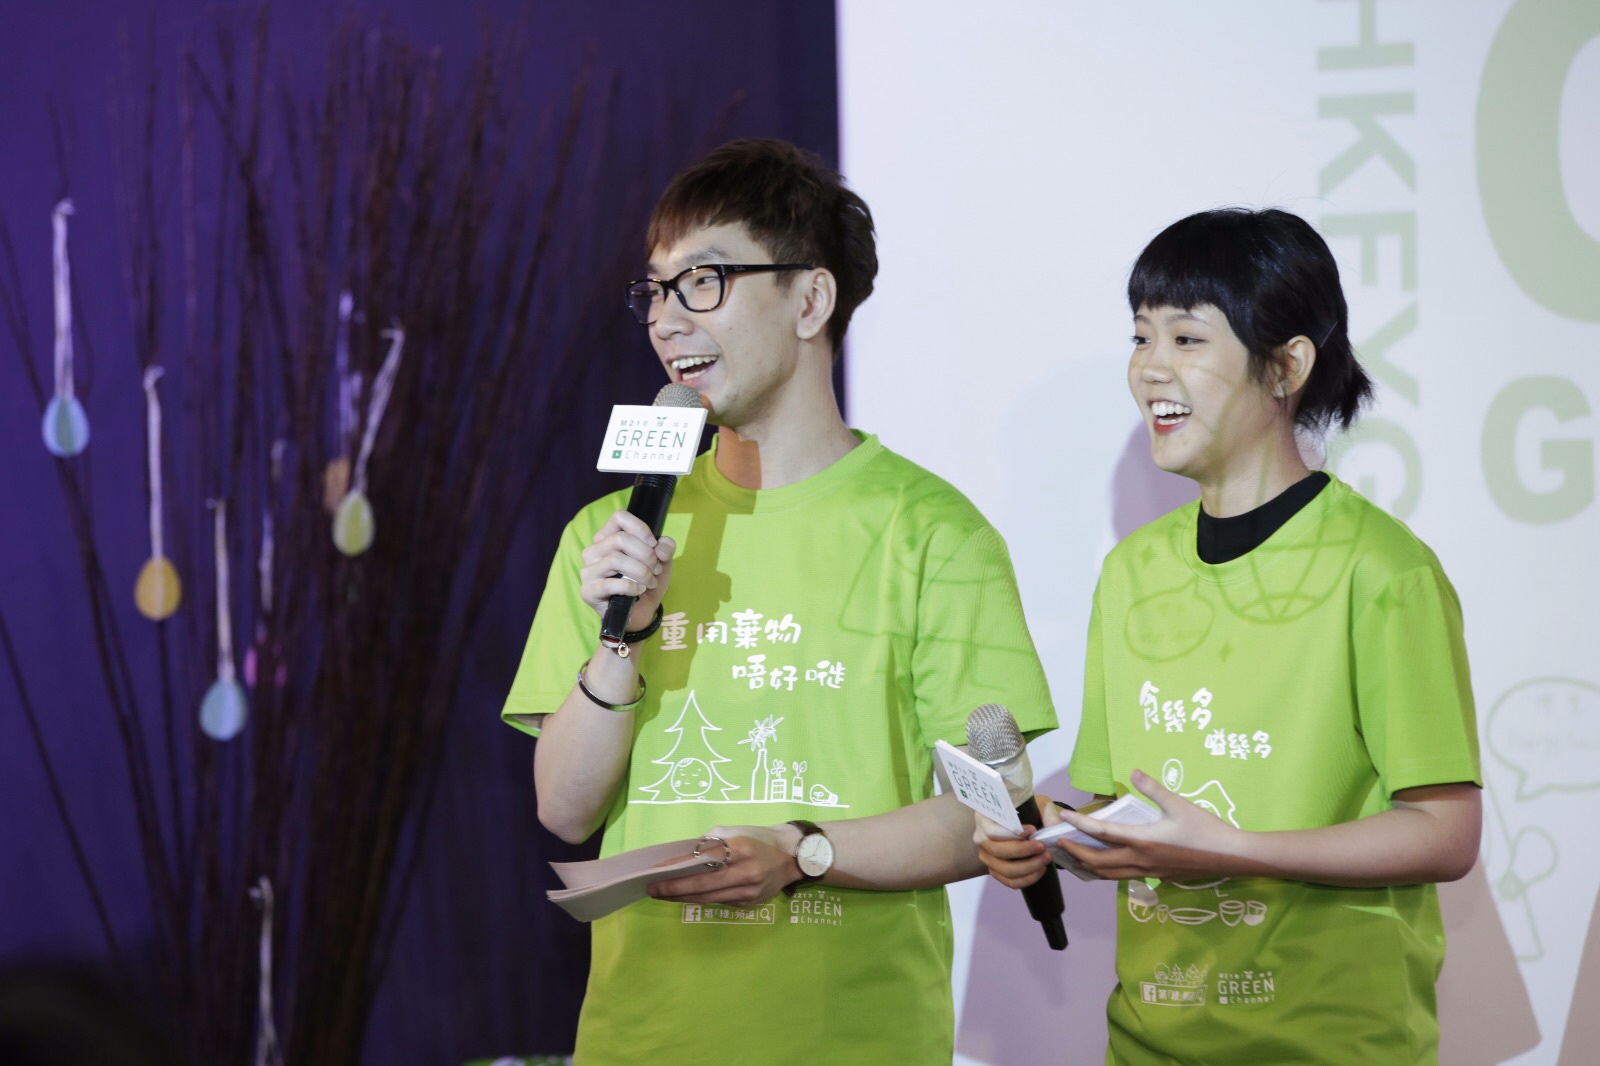 細眼司儀工作紀錄: 「活動主持」香港青年協會「邁向綠色機構」啟動禮暨第「綠」頻道開台儀式